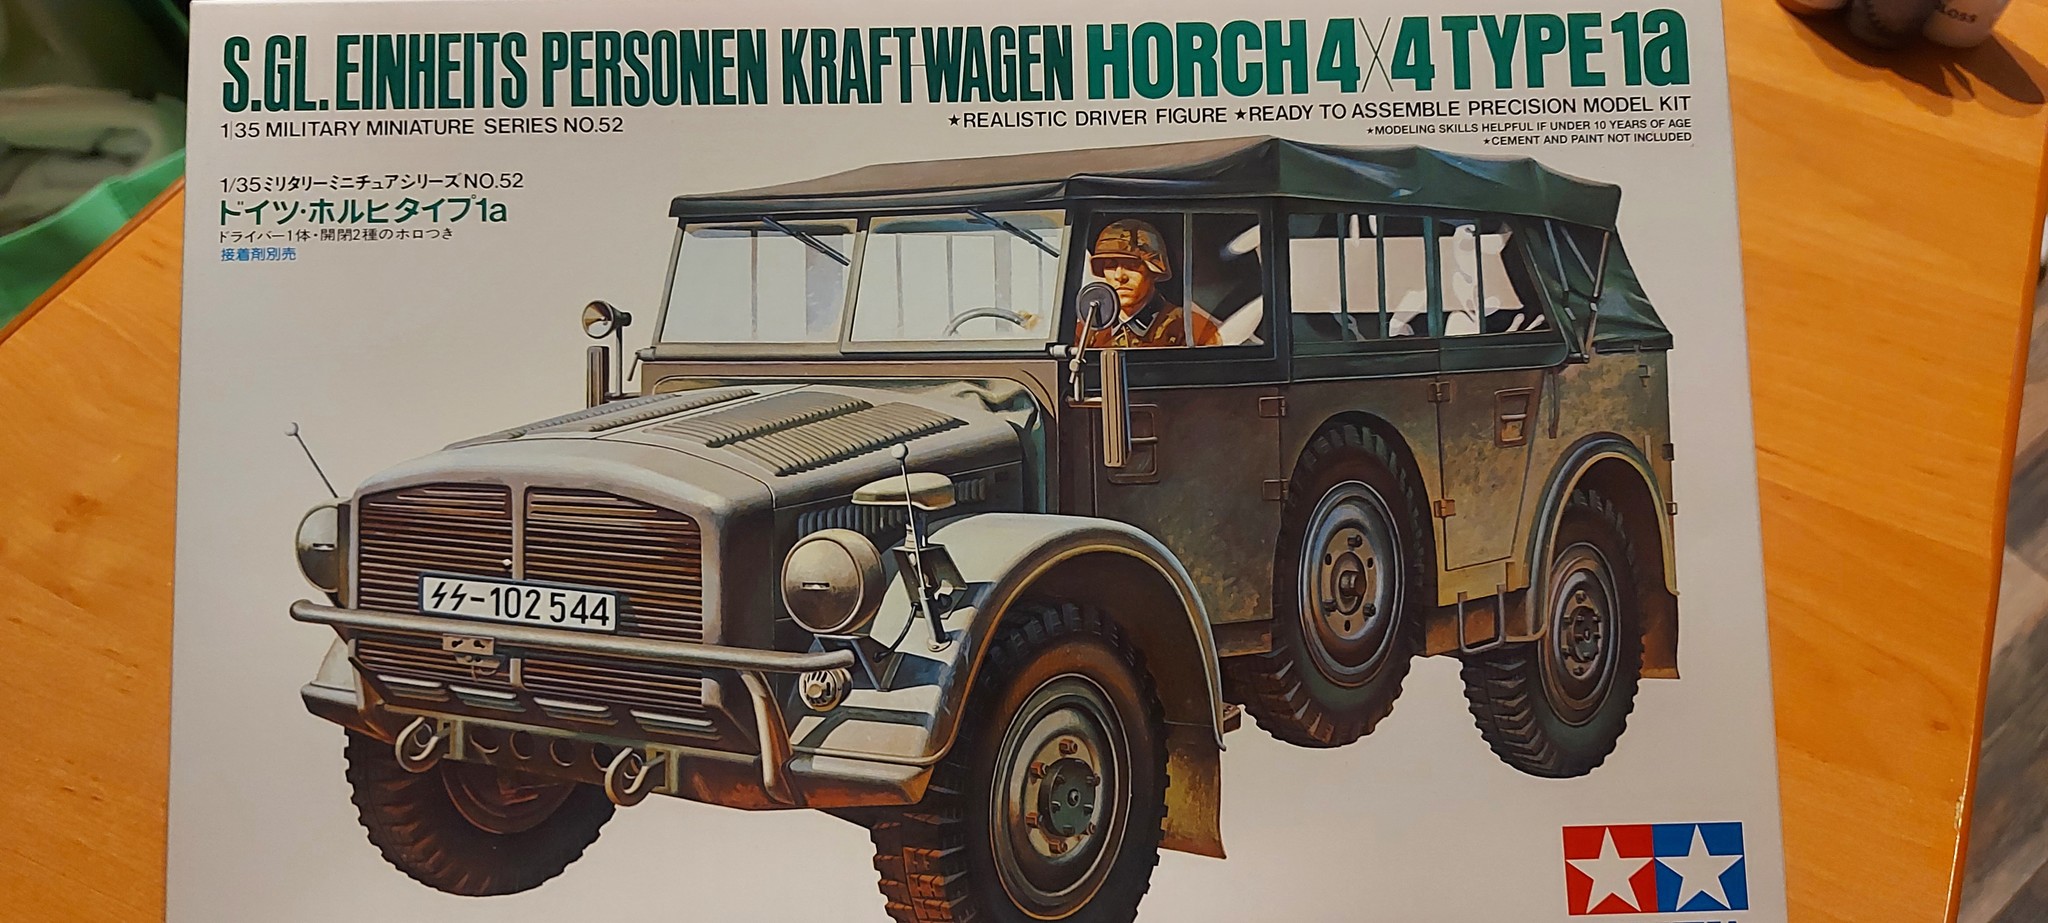 Фото Ger.Horch Type 1A Немецкий штабной автомобиль с фигурой водителя.